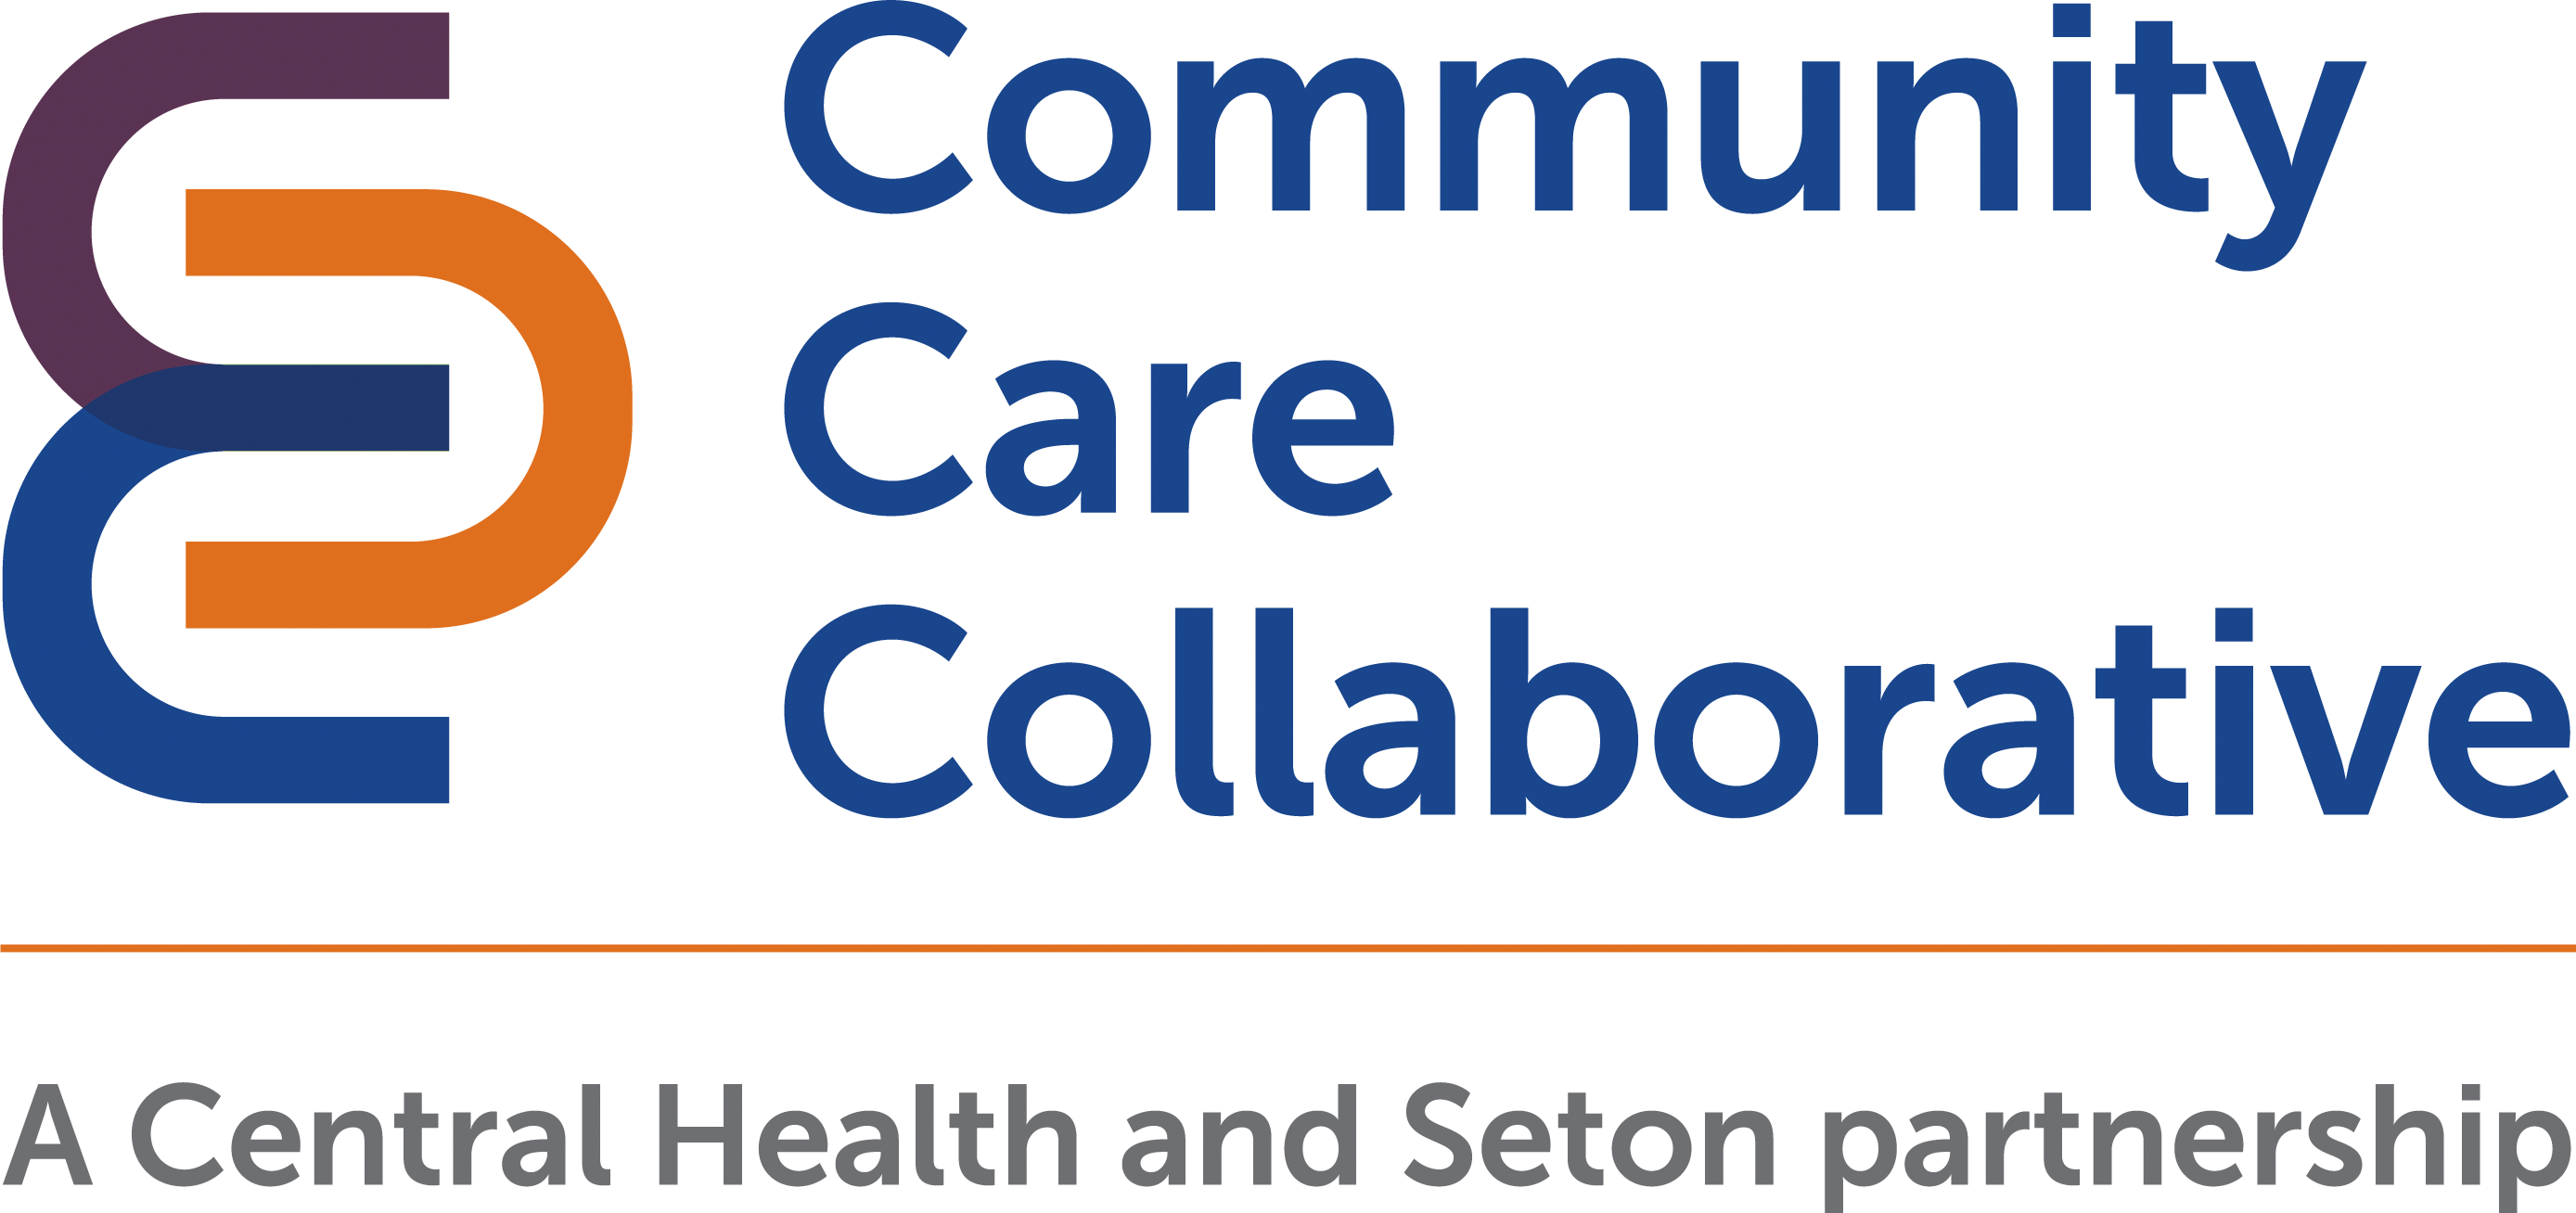 Community Care Collaborative